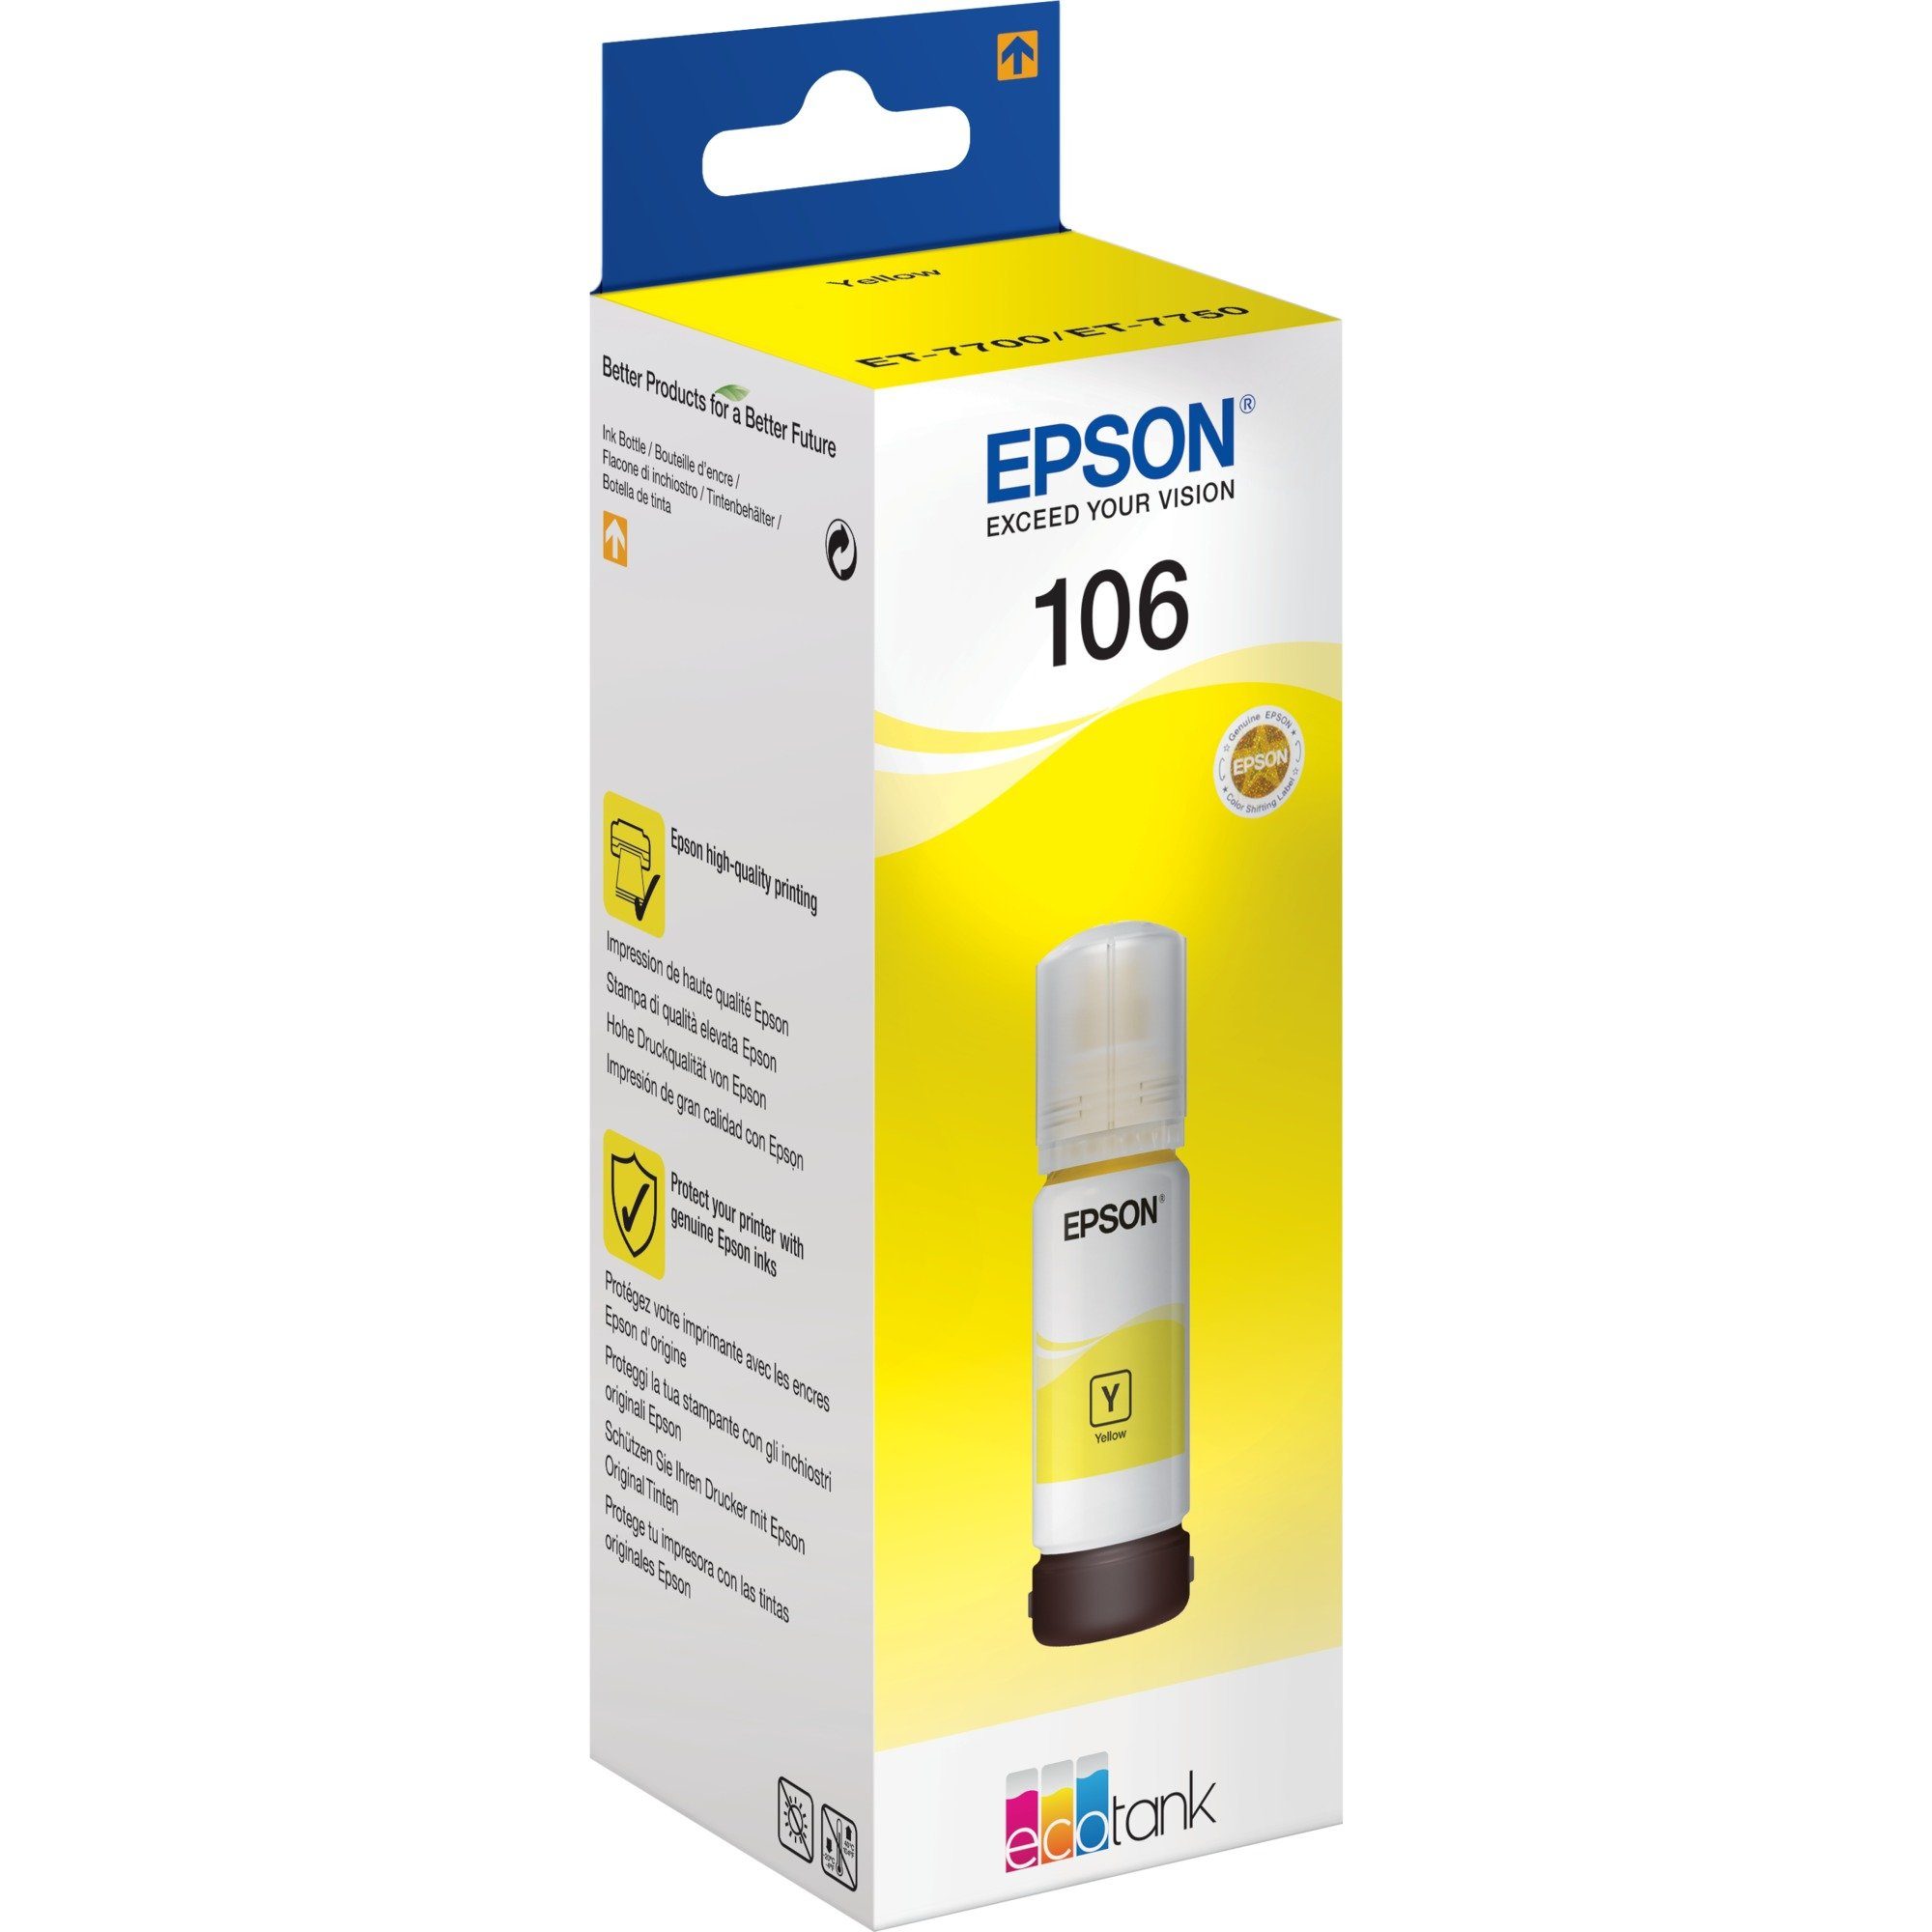 Epson Epson Tinte gelb 106 Eco Tank (C13T00R440) Tintenpatrone